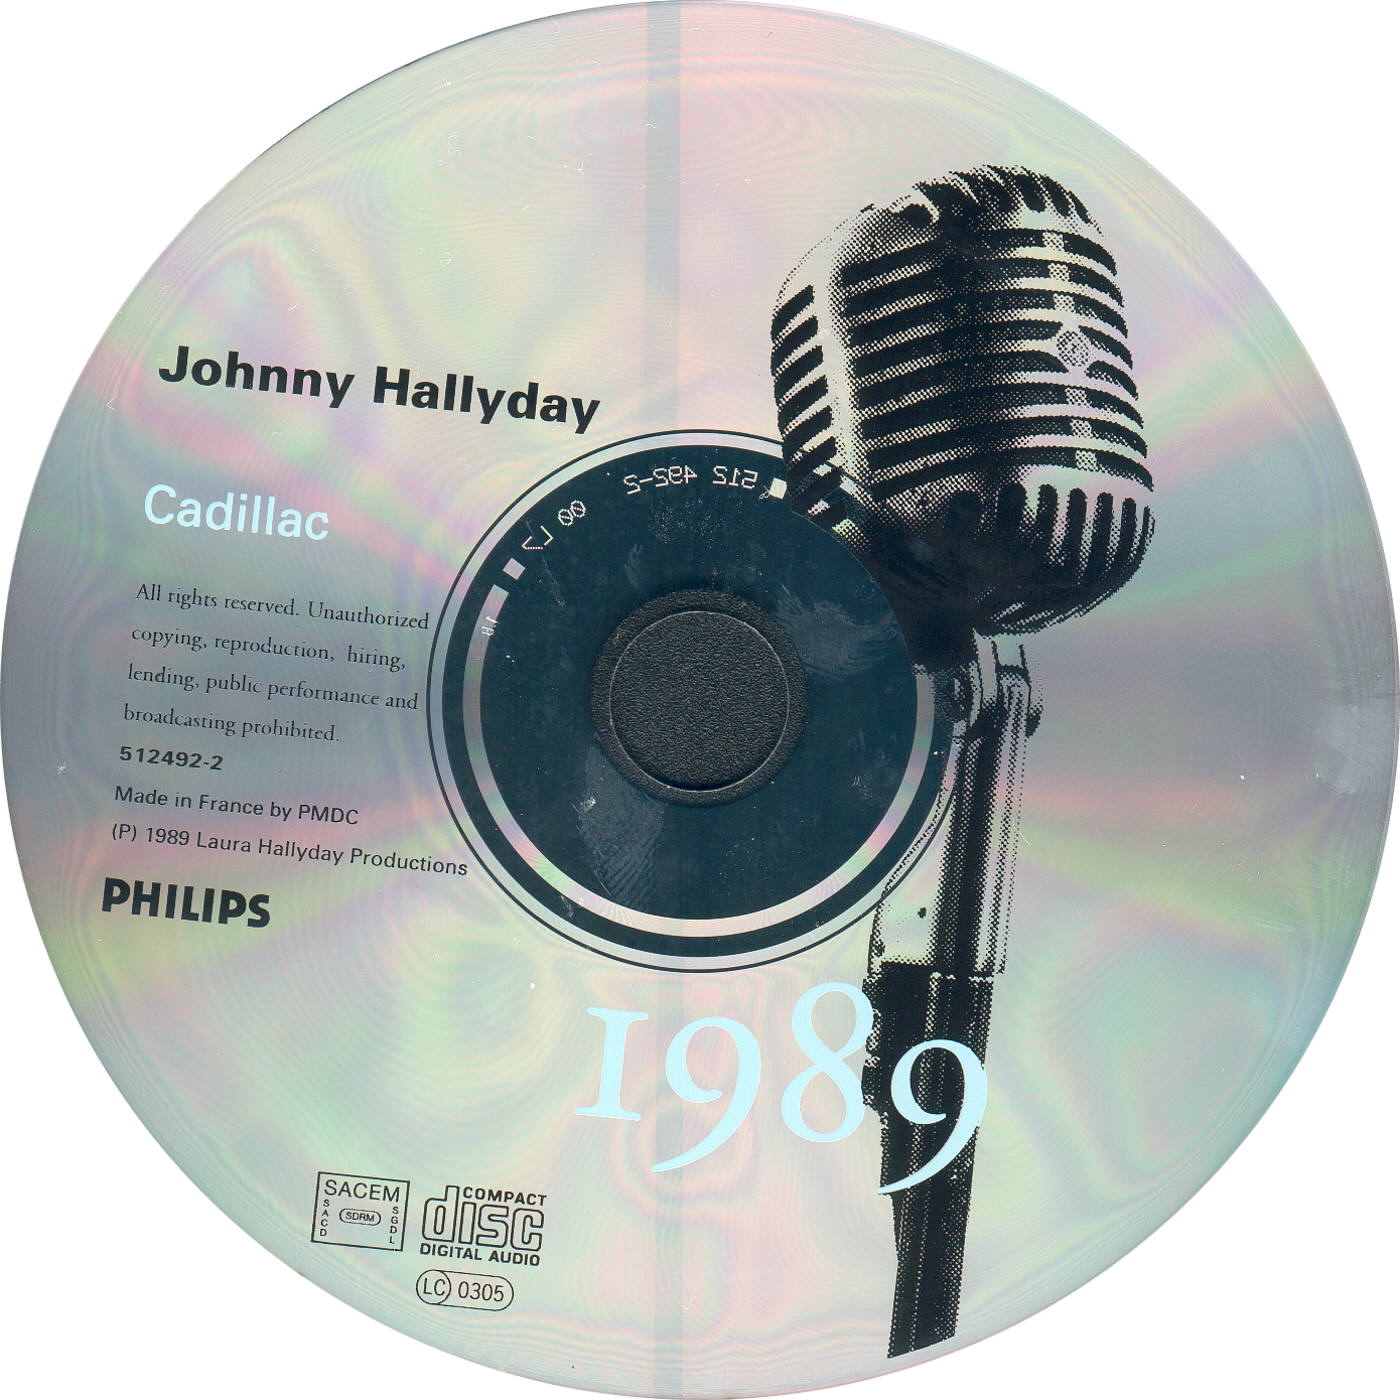 30 Cadillac CD